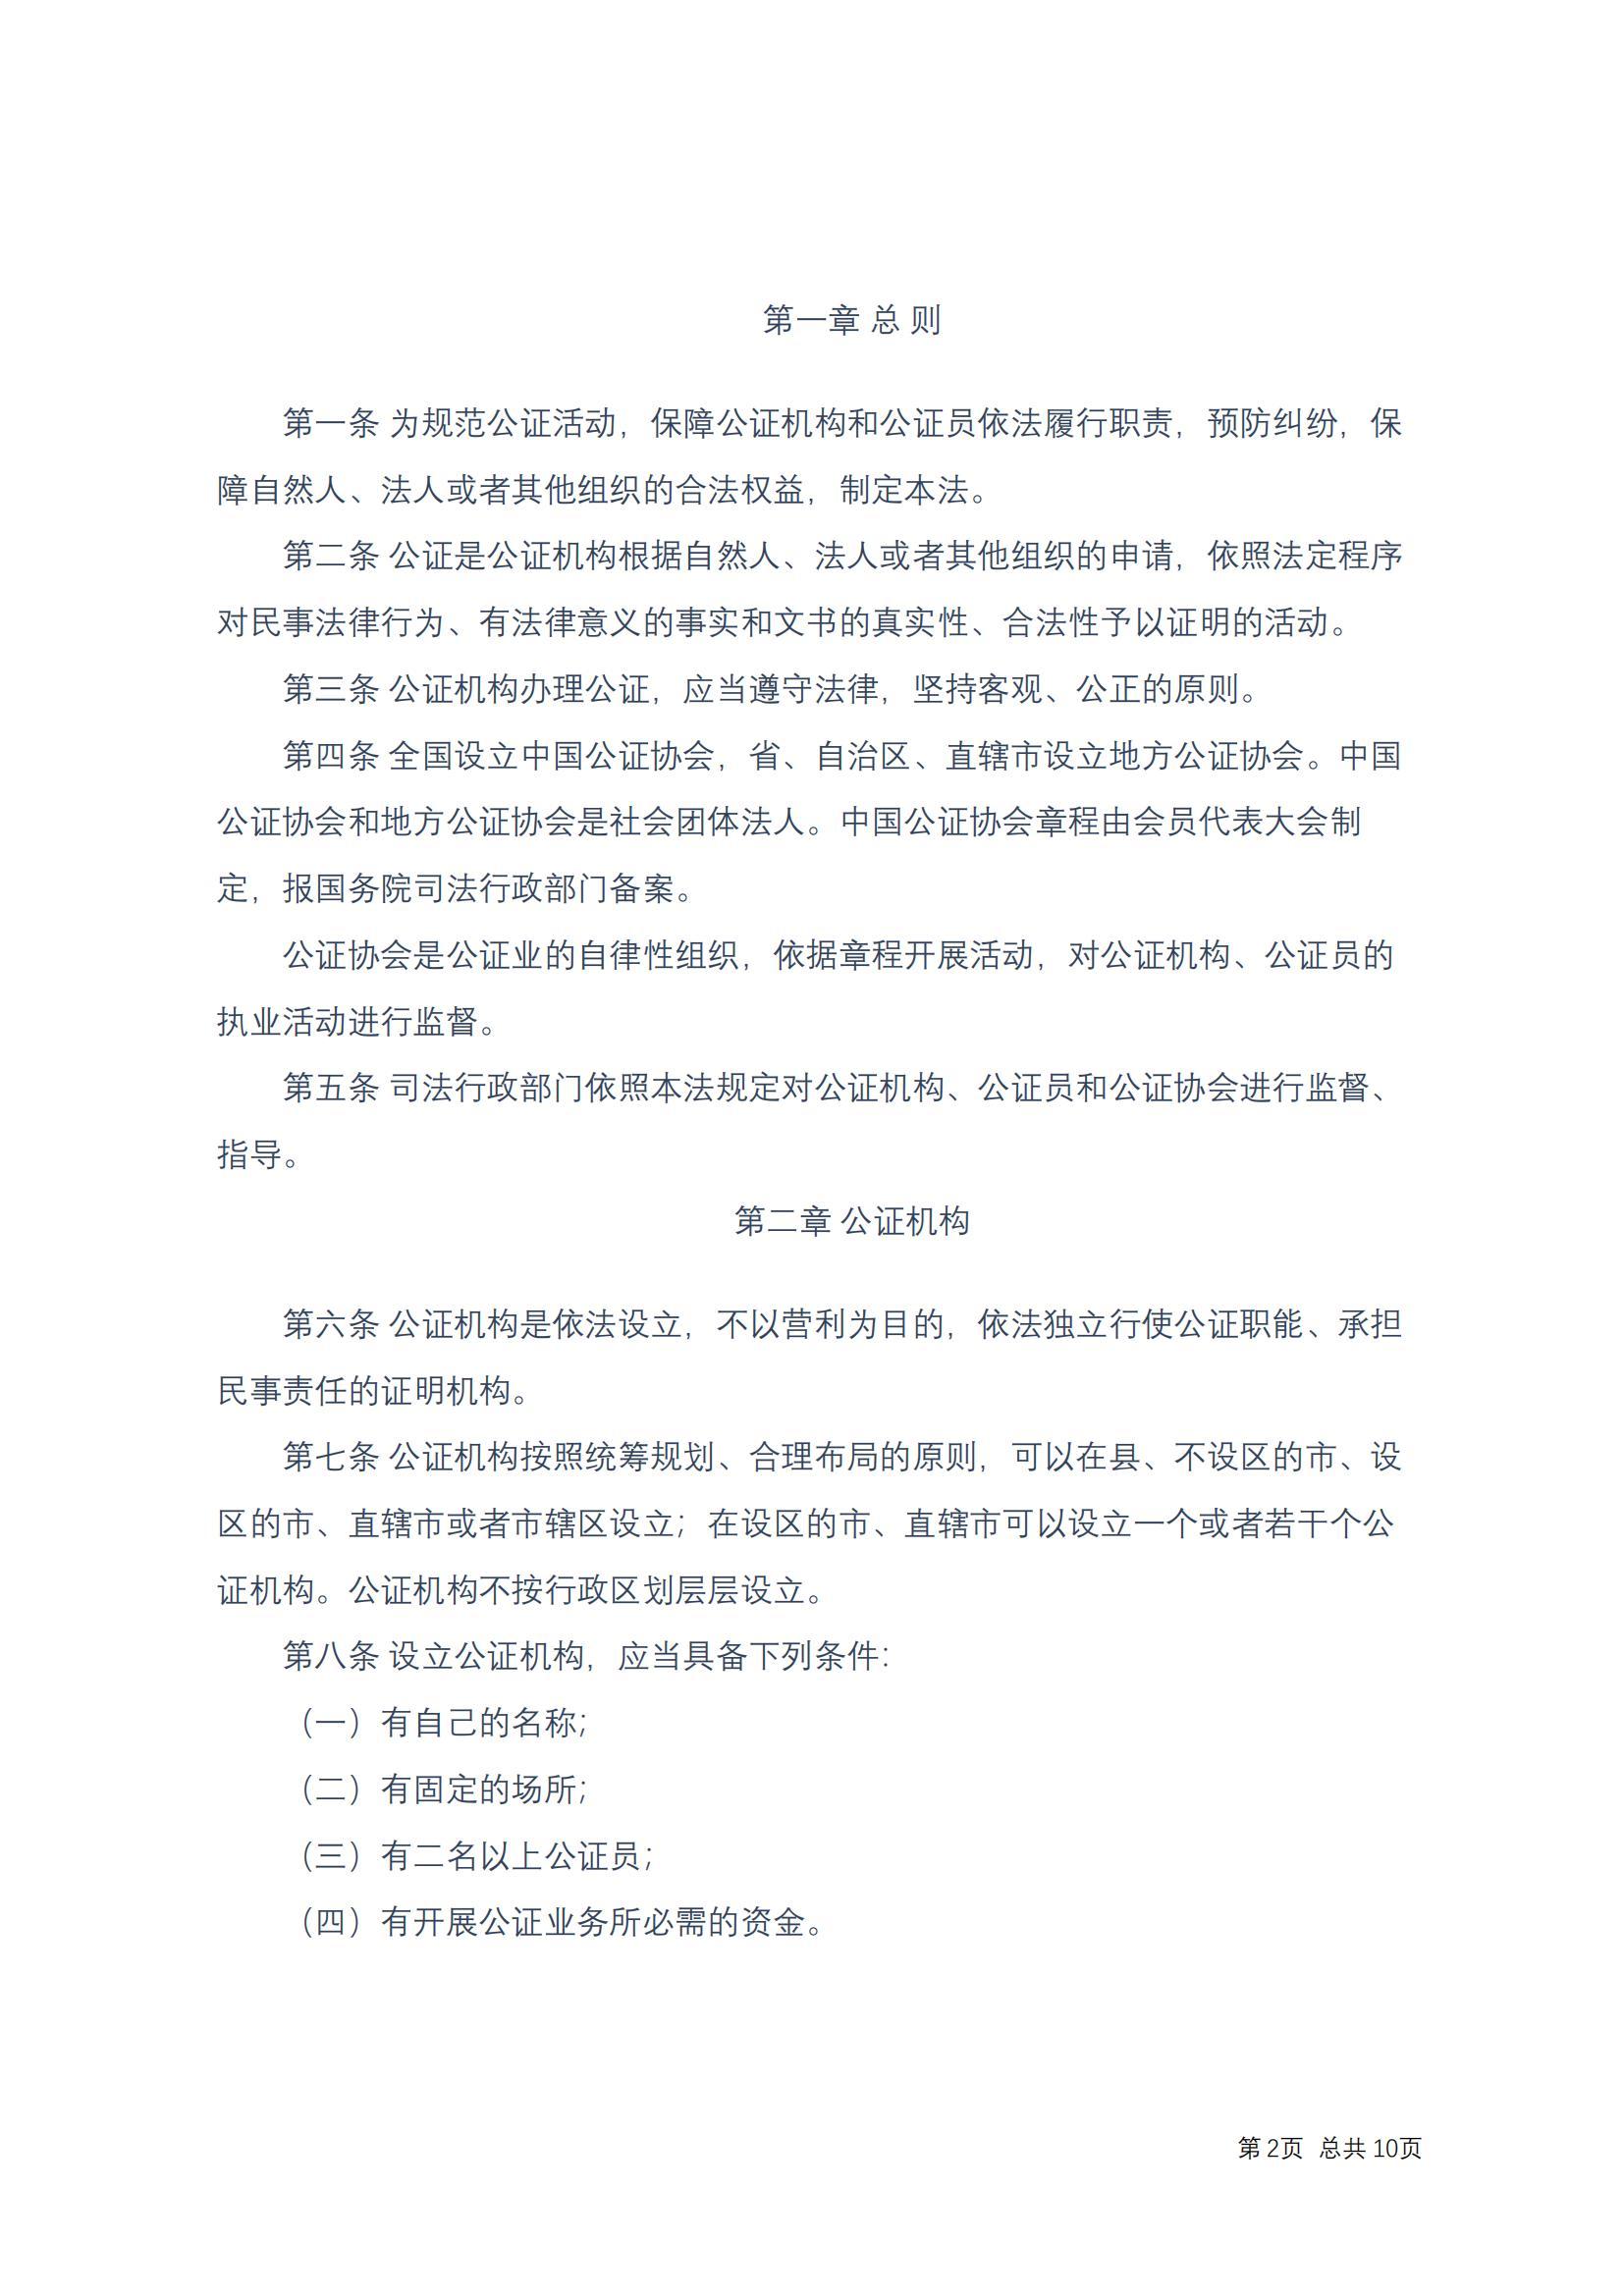 中华人民共和国公证法(2017修正)修改过_01